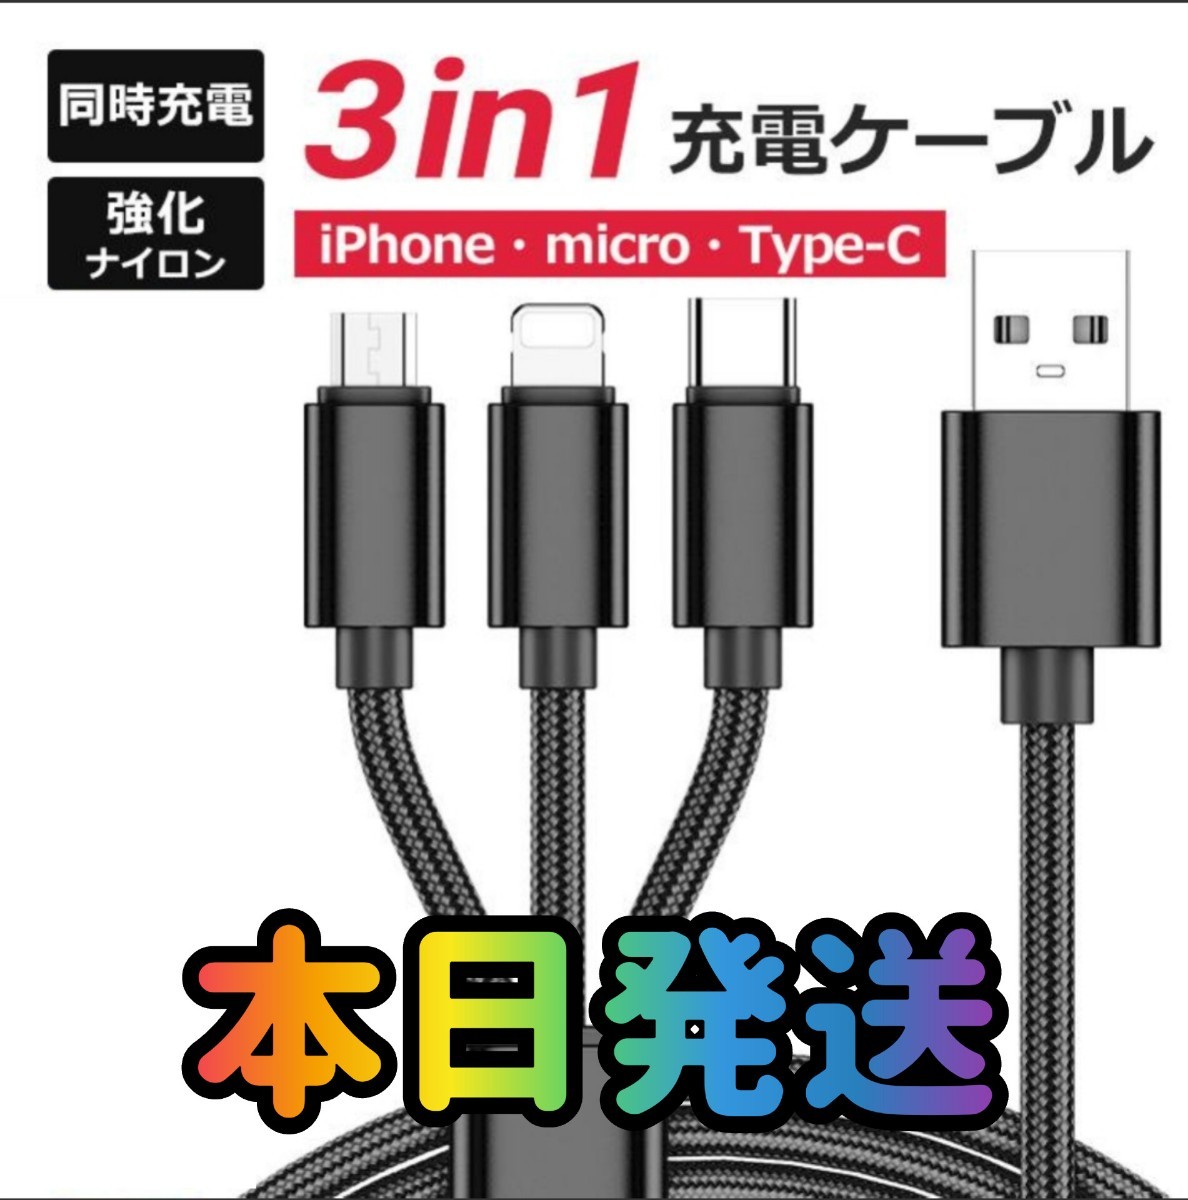 3in1ケーブル ブラック 3in1 巻き取り式 急速充電 Lightning Type-C microUSB 3in1 充電ケーブル ライトニング 充電 USBケーブルの画像1